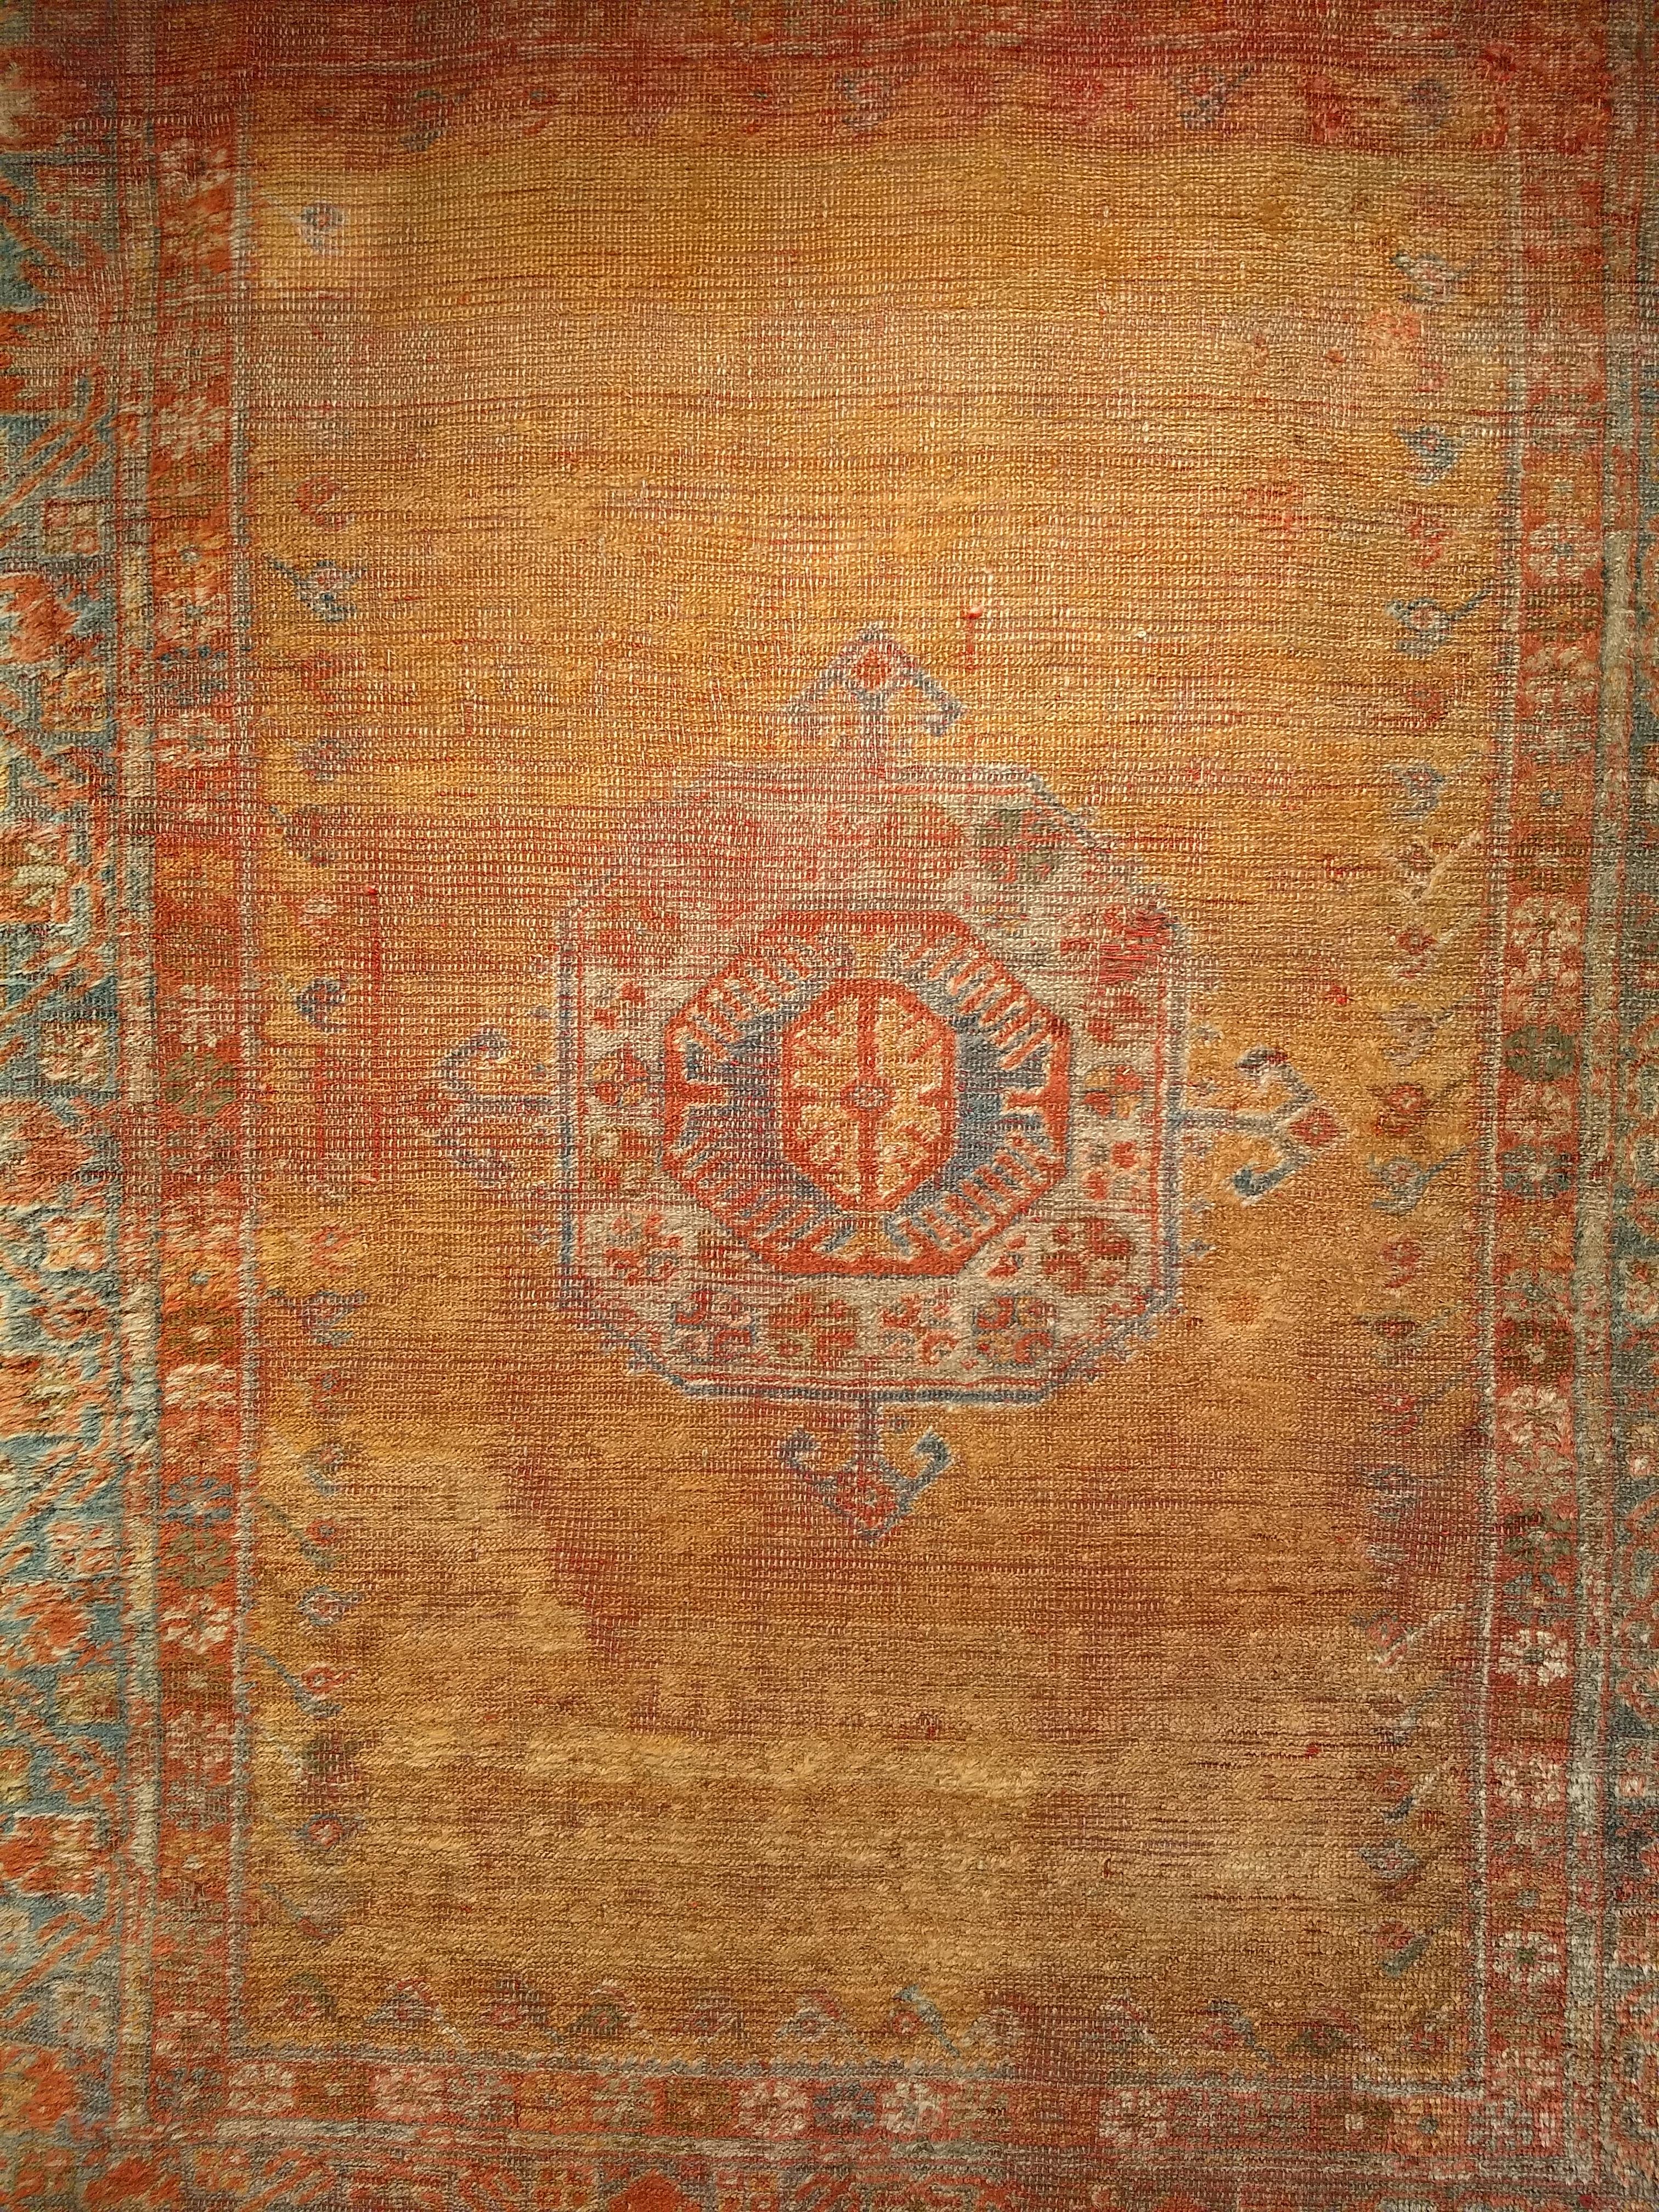 Tapis turc Oushak  du troisième quart des années 1800.  Le tapis présente le design classique des tapis Mamluke des 15e et 16e siècles.   Le tapis présente un magnifique champ jaune safran. Il comporte un petit médaillon central de couleur bleu/vert